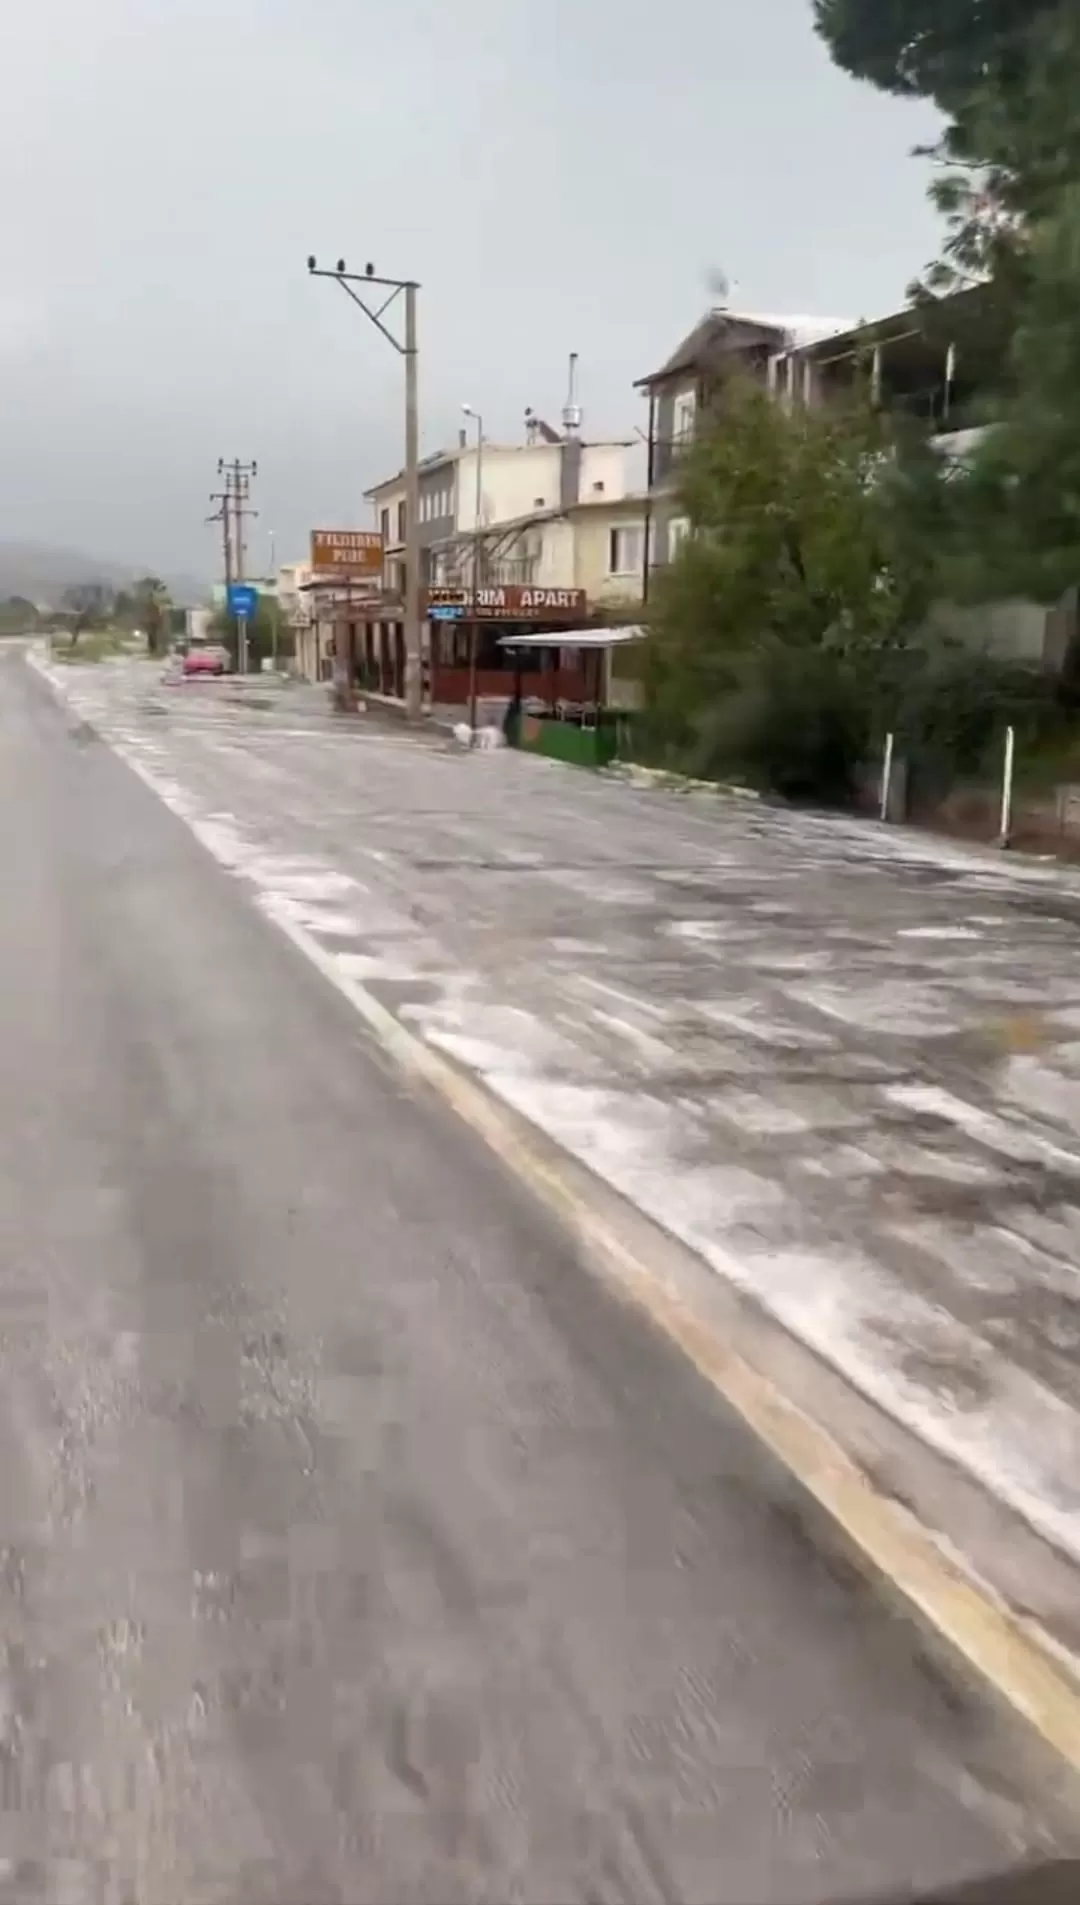 İzmir'in Bergama ilçesinde etkili olan sağanak yağış ve fırtına nedeniyle bir binanın çatısı uçtu. O anlar bir vatandaş tarafından cep telefonu kamerasıyla kayda alındı.